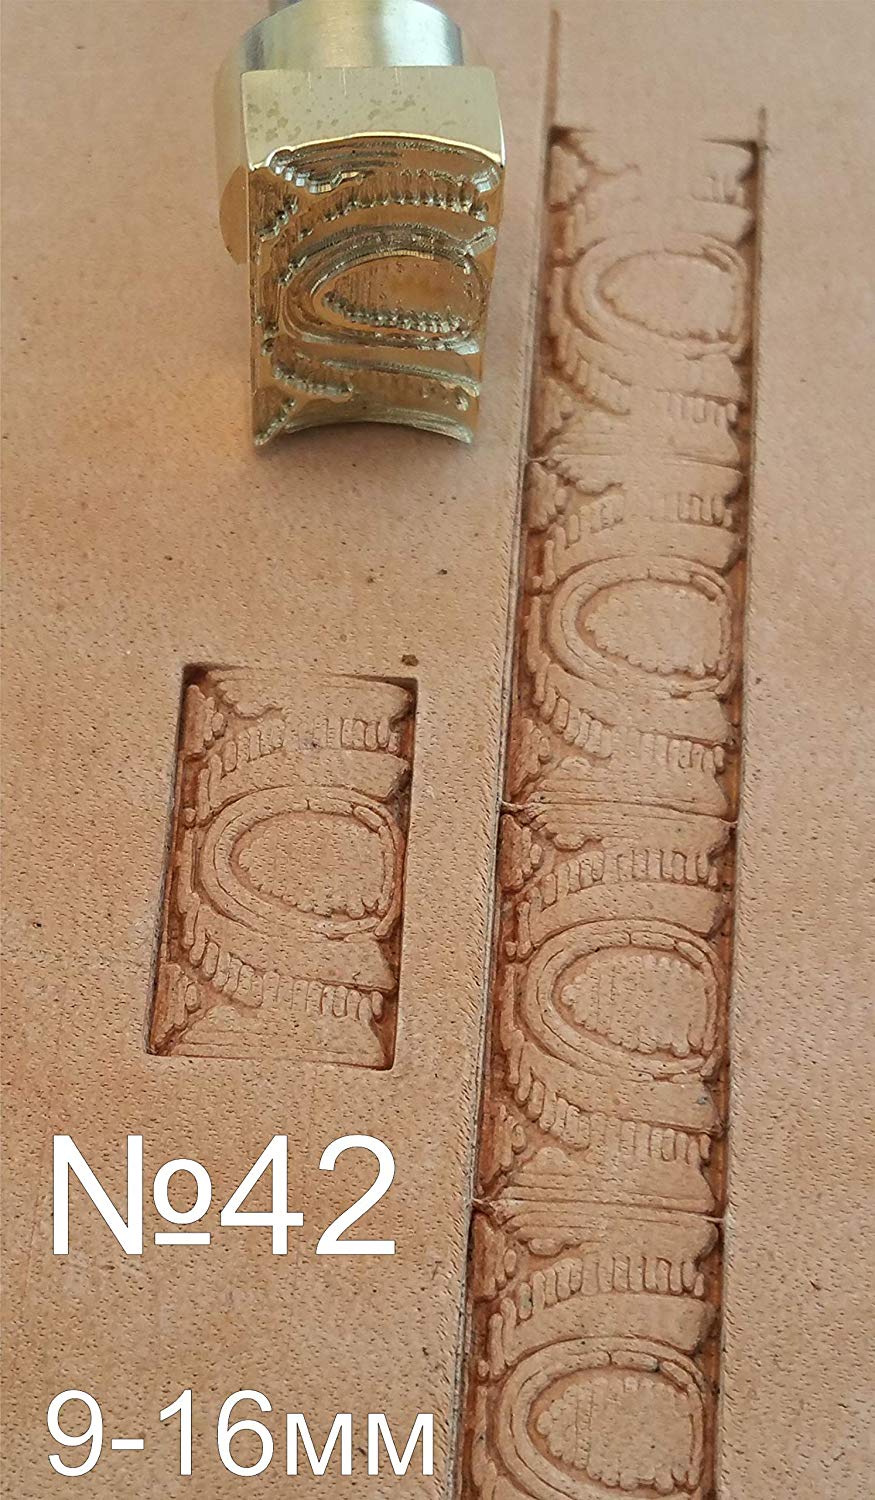 Leather stamp tool #42 - SpasGoranov